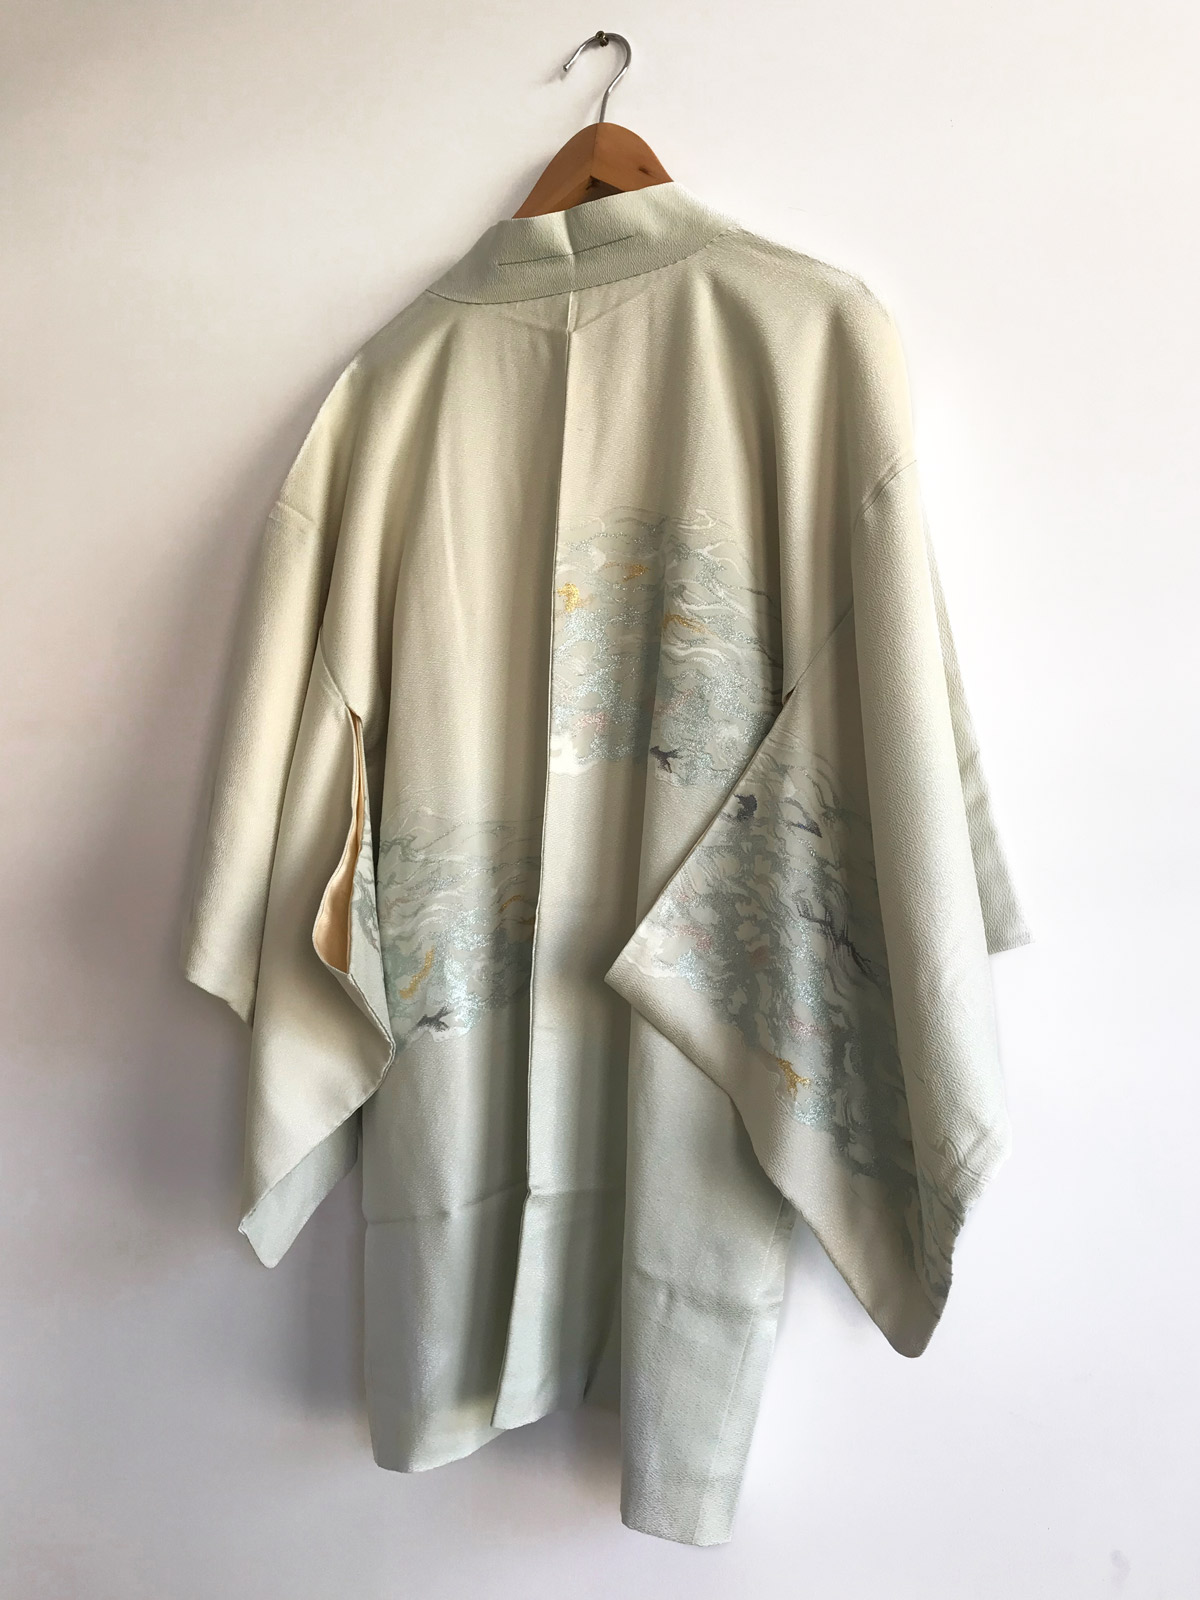 Megumi – delicate, silk Kimono jacket with woven metallic threads